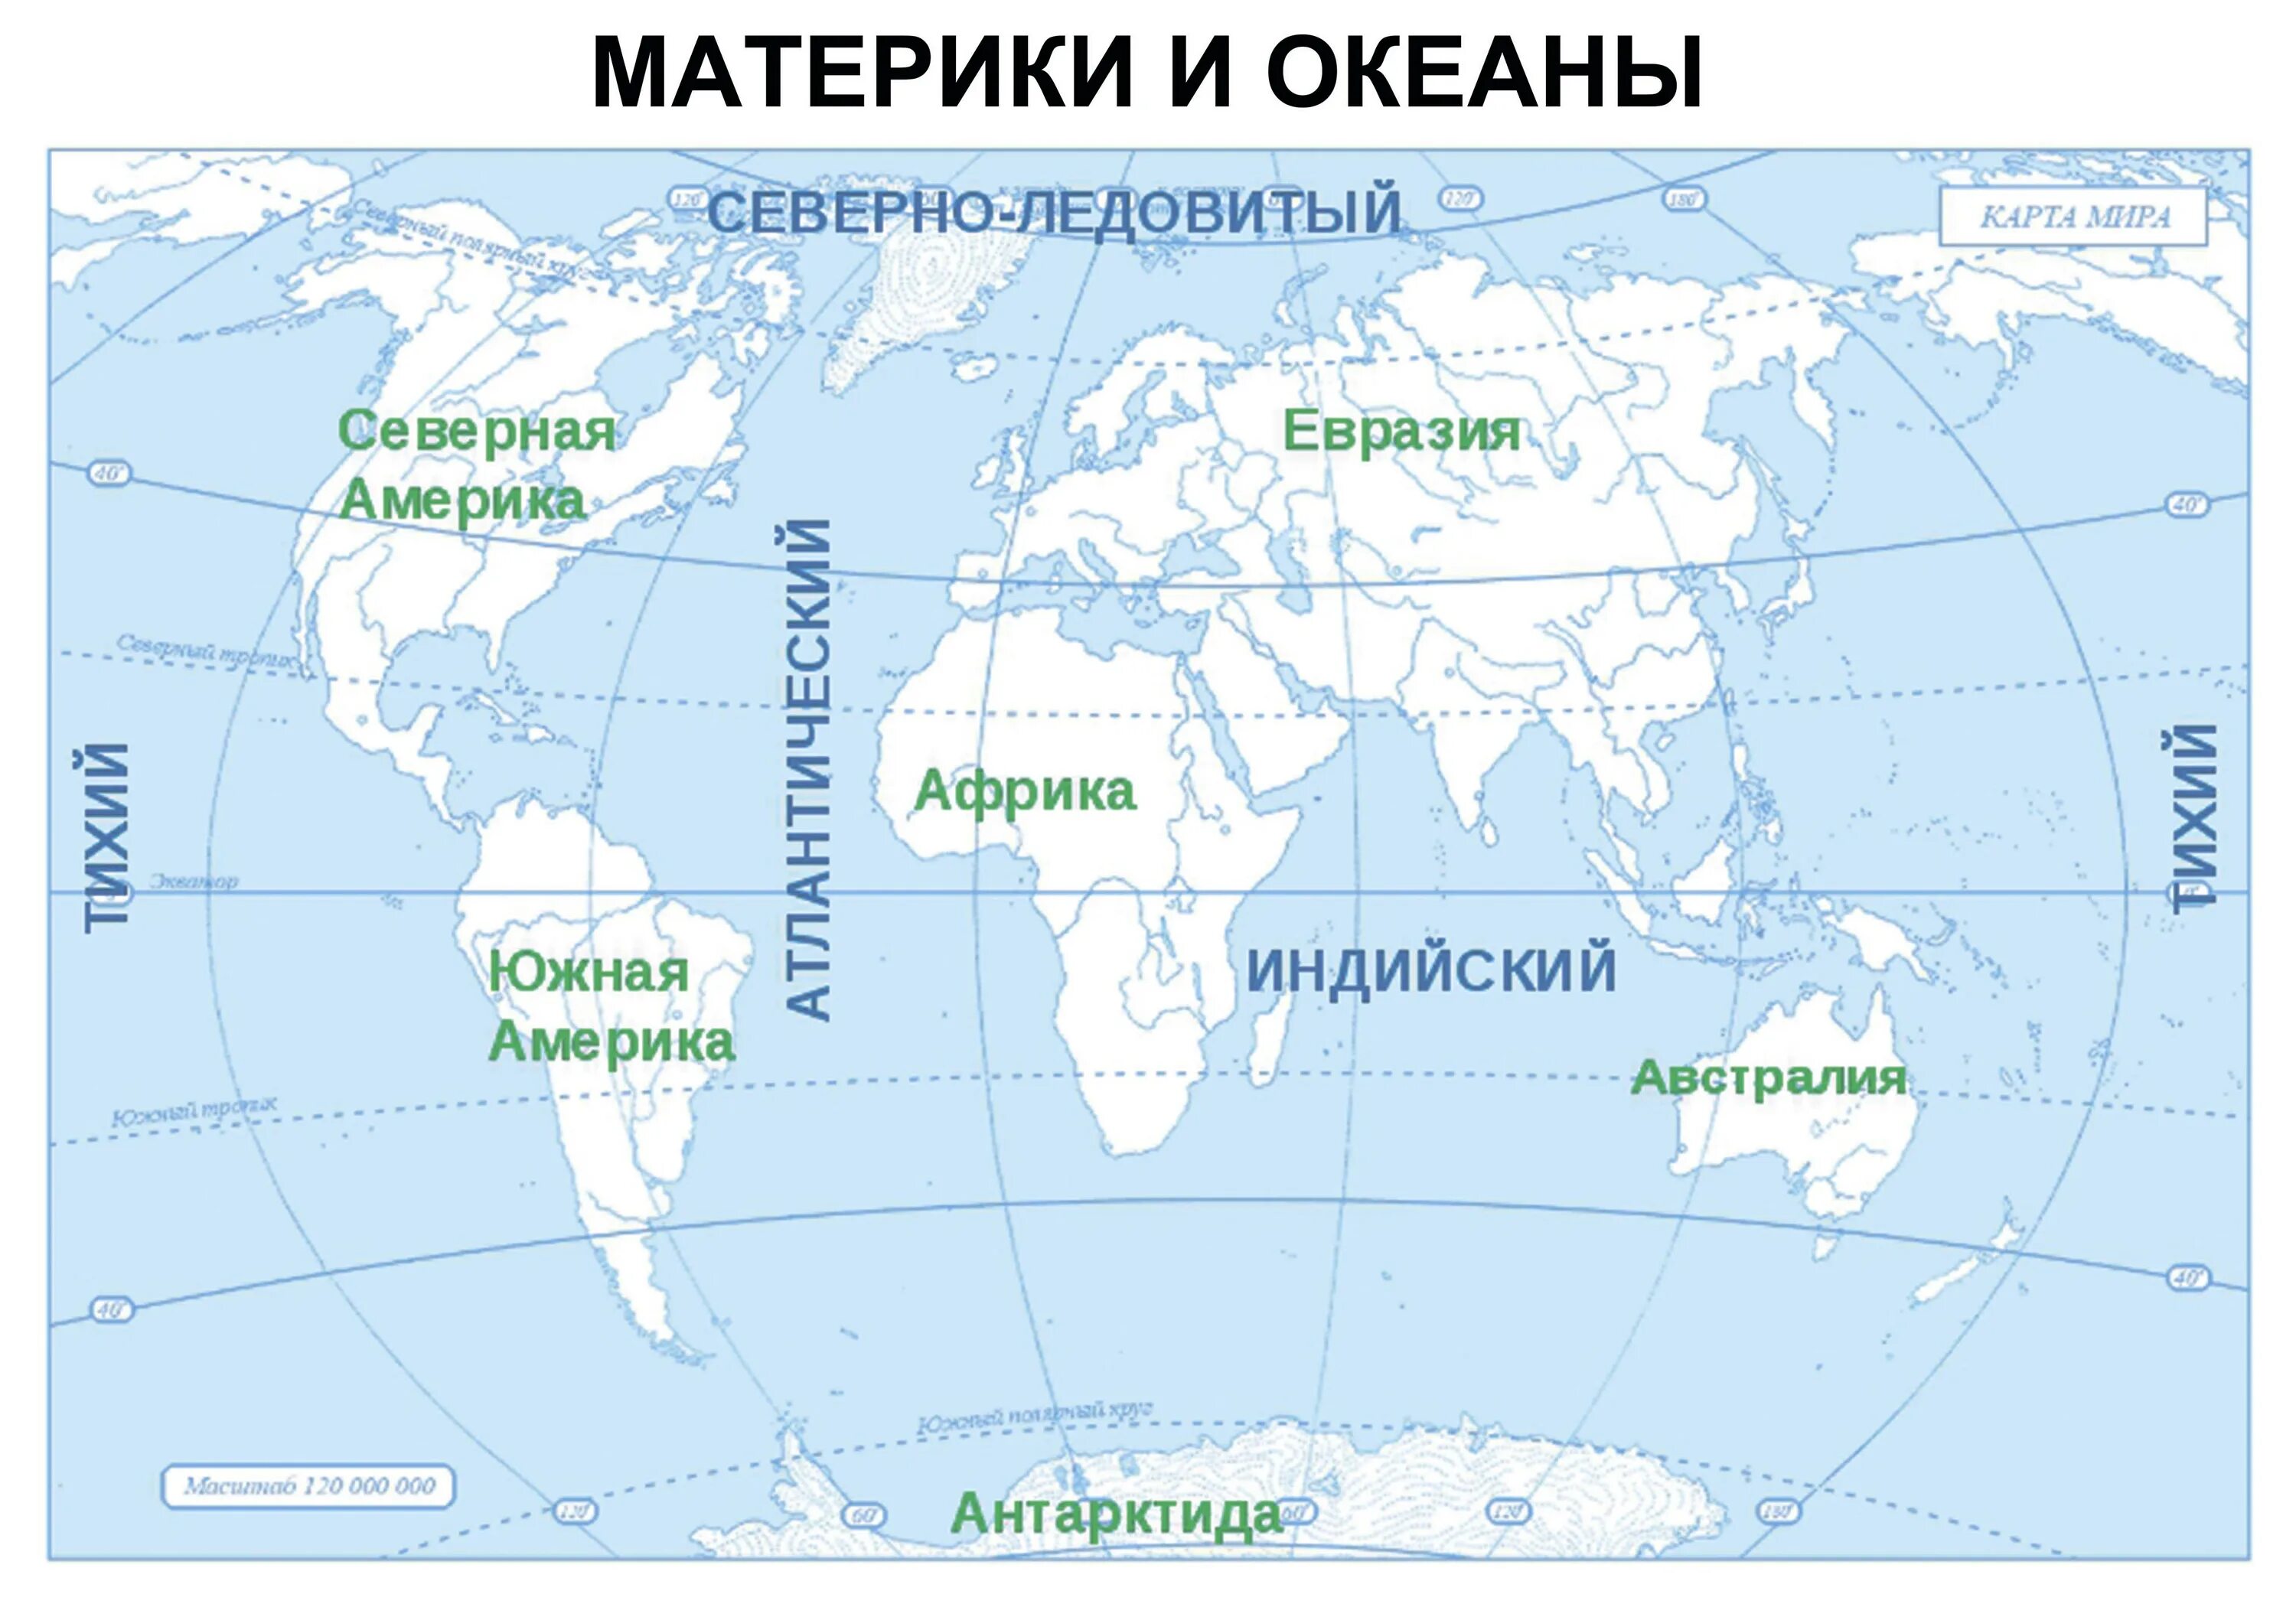 Карта где подписаны материки и океаны. Подписать материки и океаны на контурной карте. Подписать материки на контурной карте 6 класс география. Название материка на западе